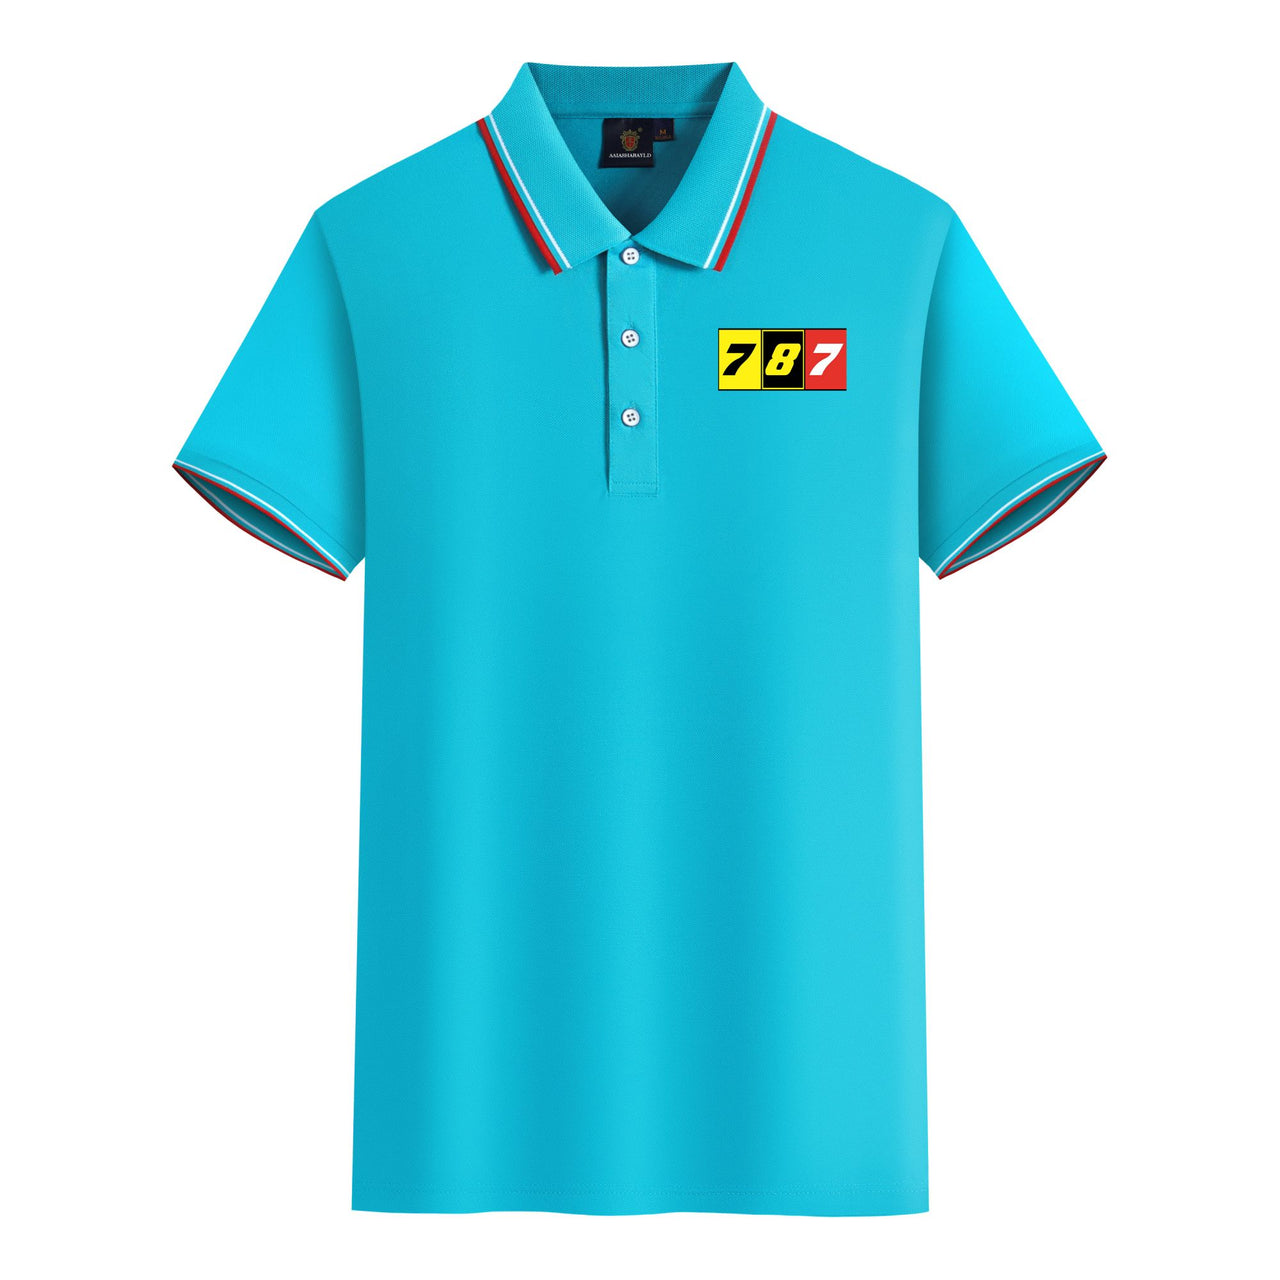 Flat Colourful 787 Designed Stylish Polo T-Shirts